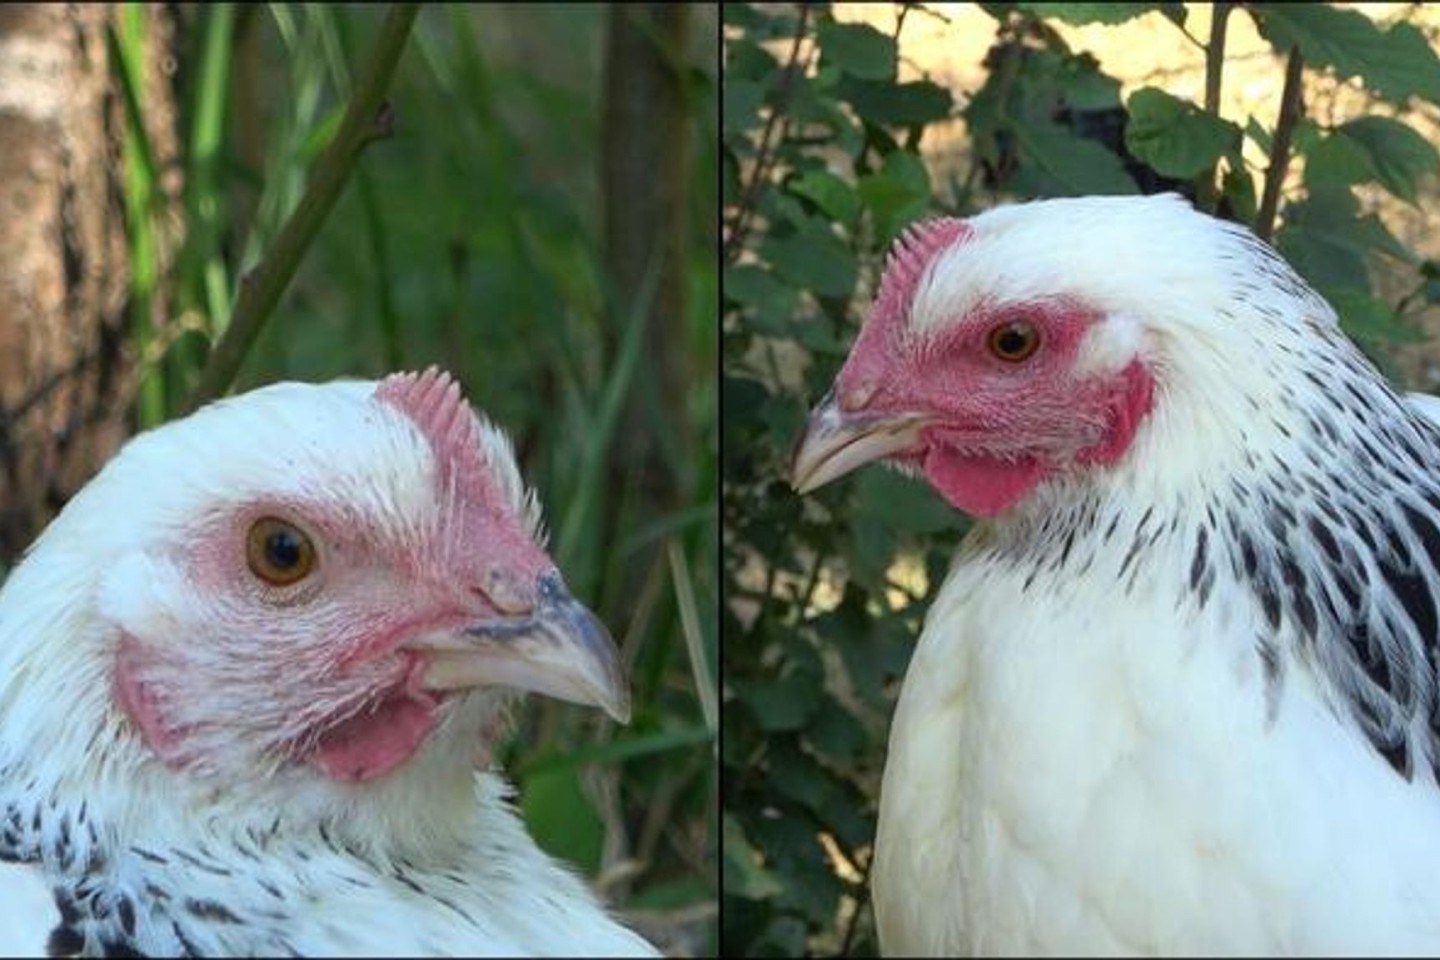 Die linke Henne ist den Angaben zufolge im Ruhezustand und daher ist ihr Gesicht nur leicht rot gefärbt. Rechts sieht man ein stark errötetes Gesicht, nachdem das Huhn eine negative Erfahr...